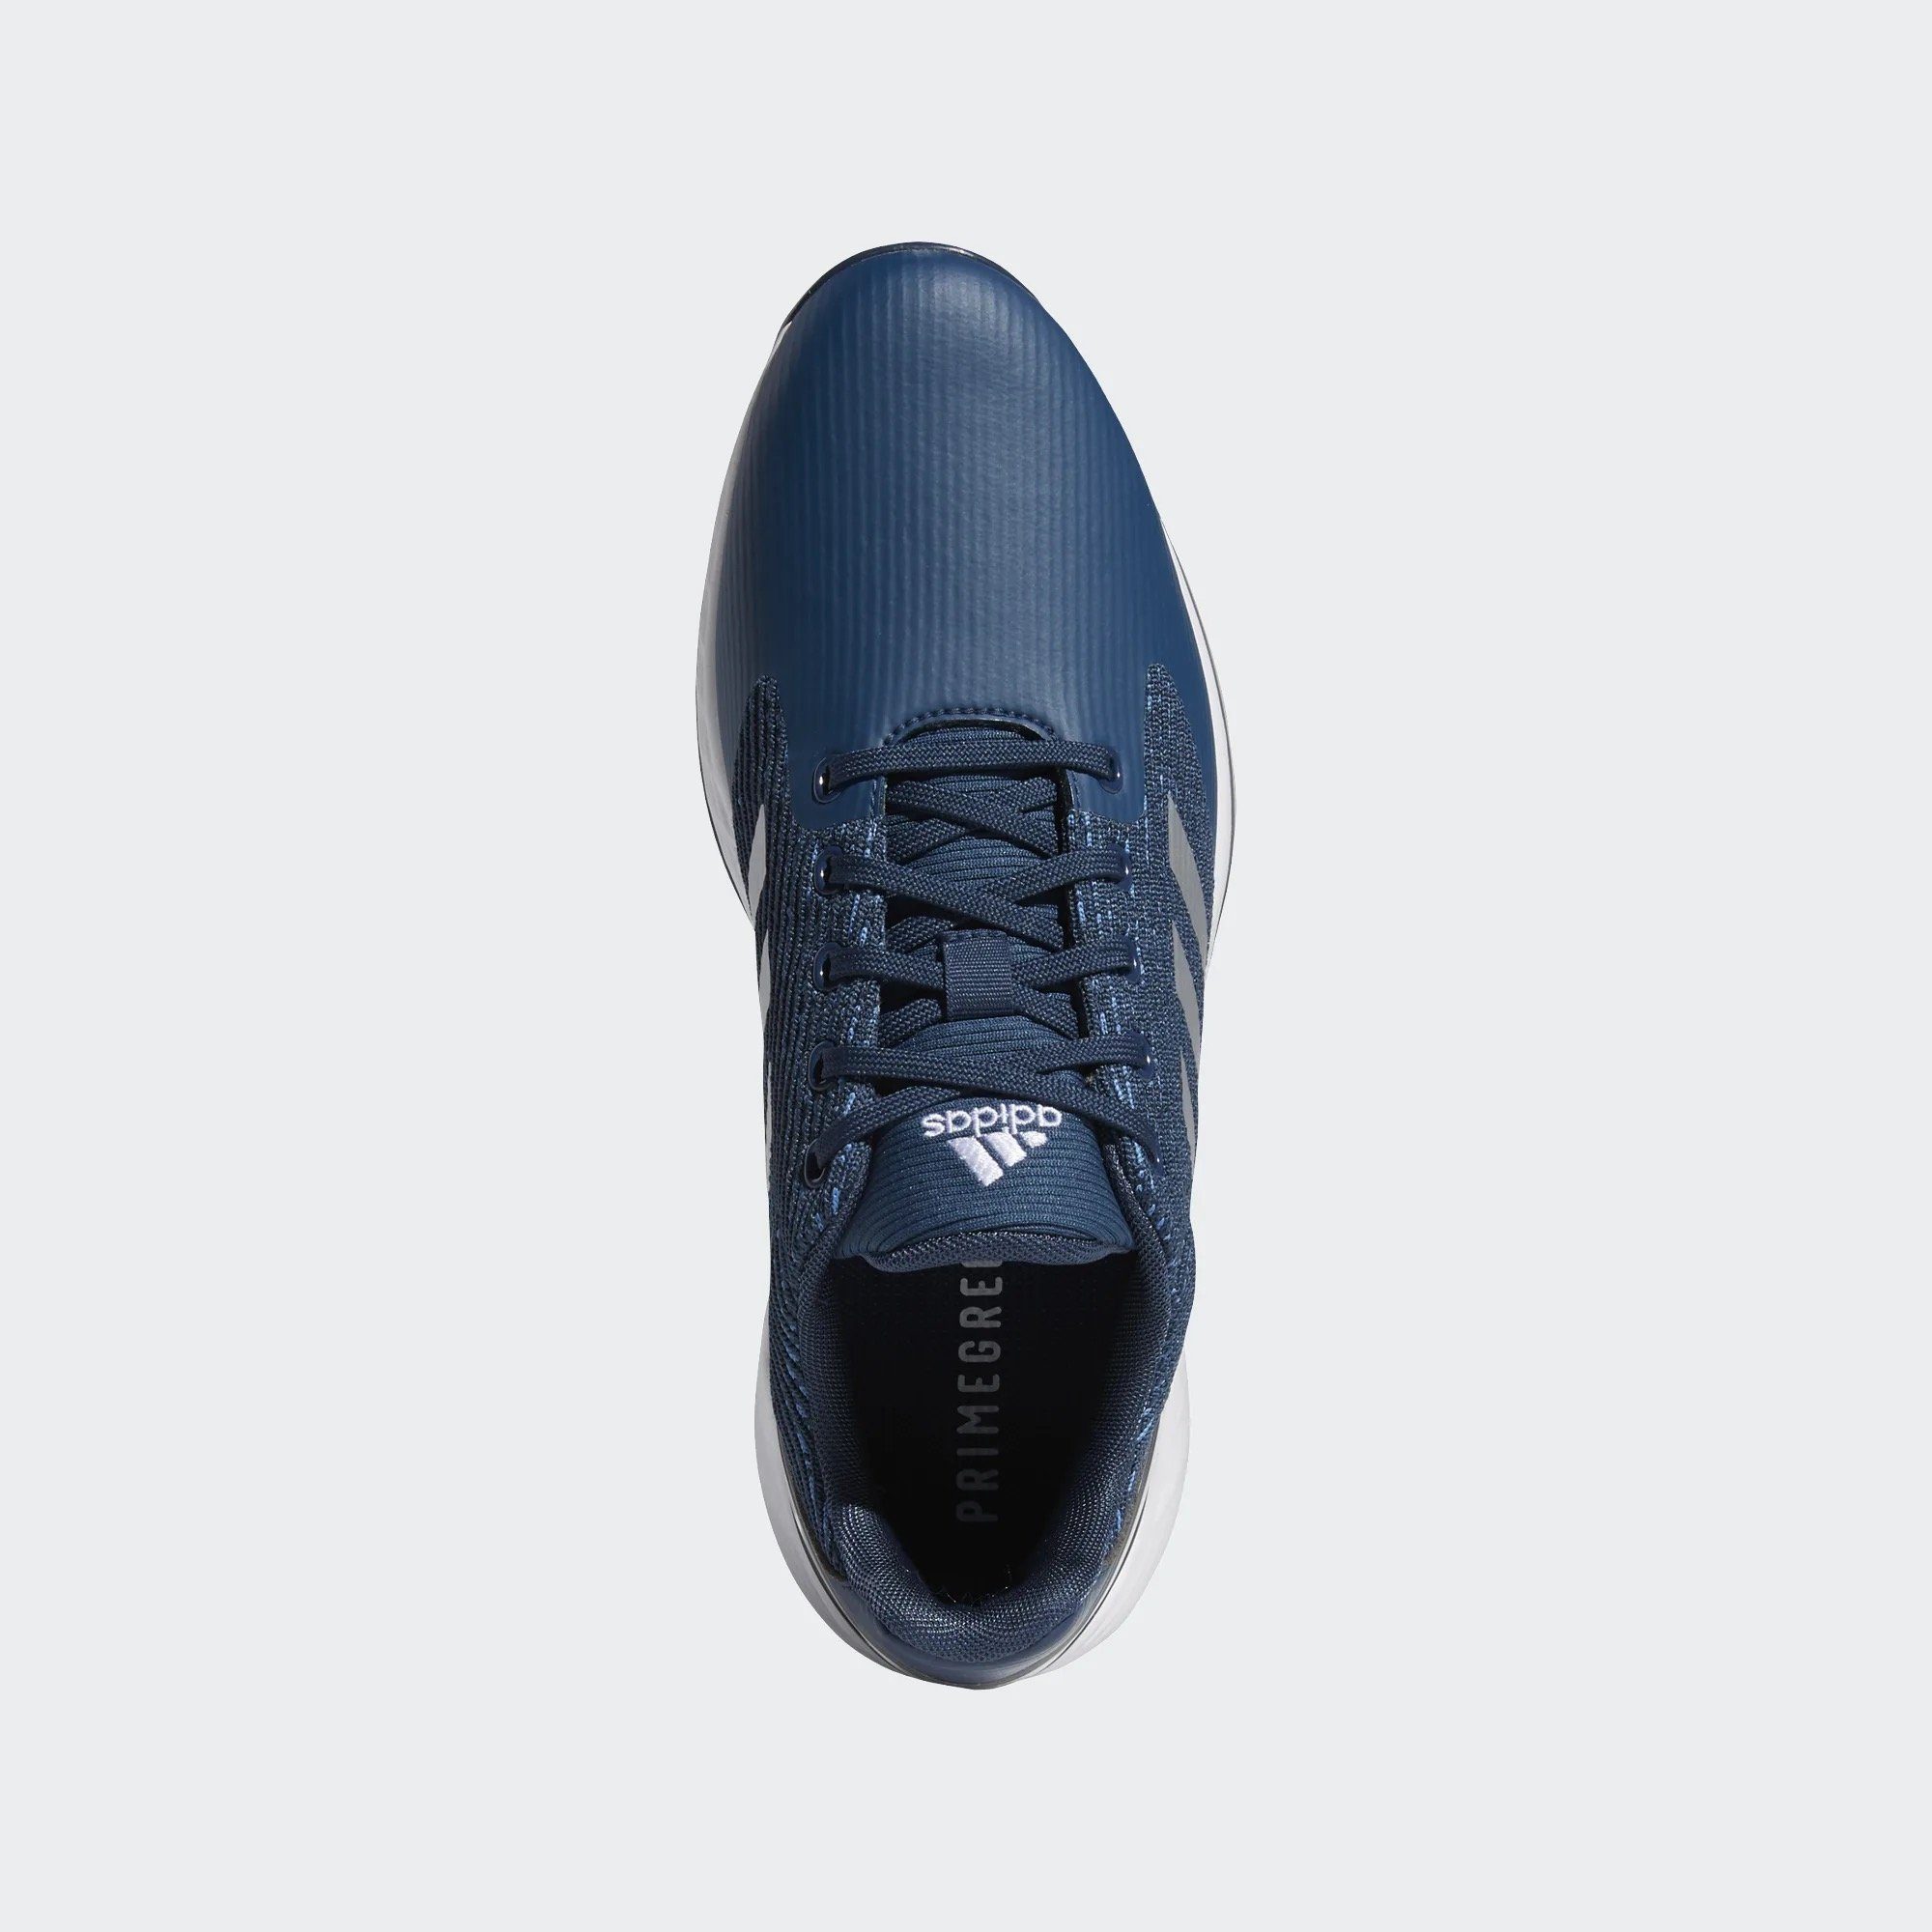 Sportswear Grey/Blue/Yellow adidas ZG Motion Golfschuh Adidas Boost Zwischensohle 21 Herren